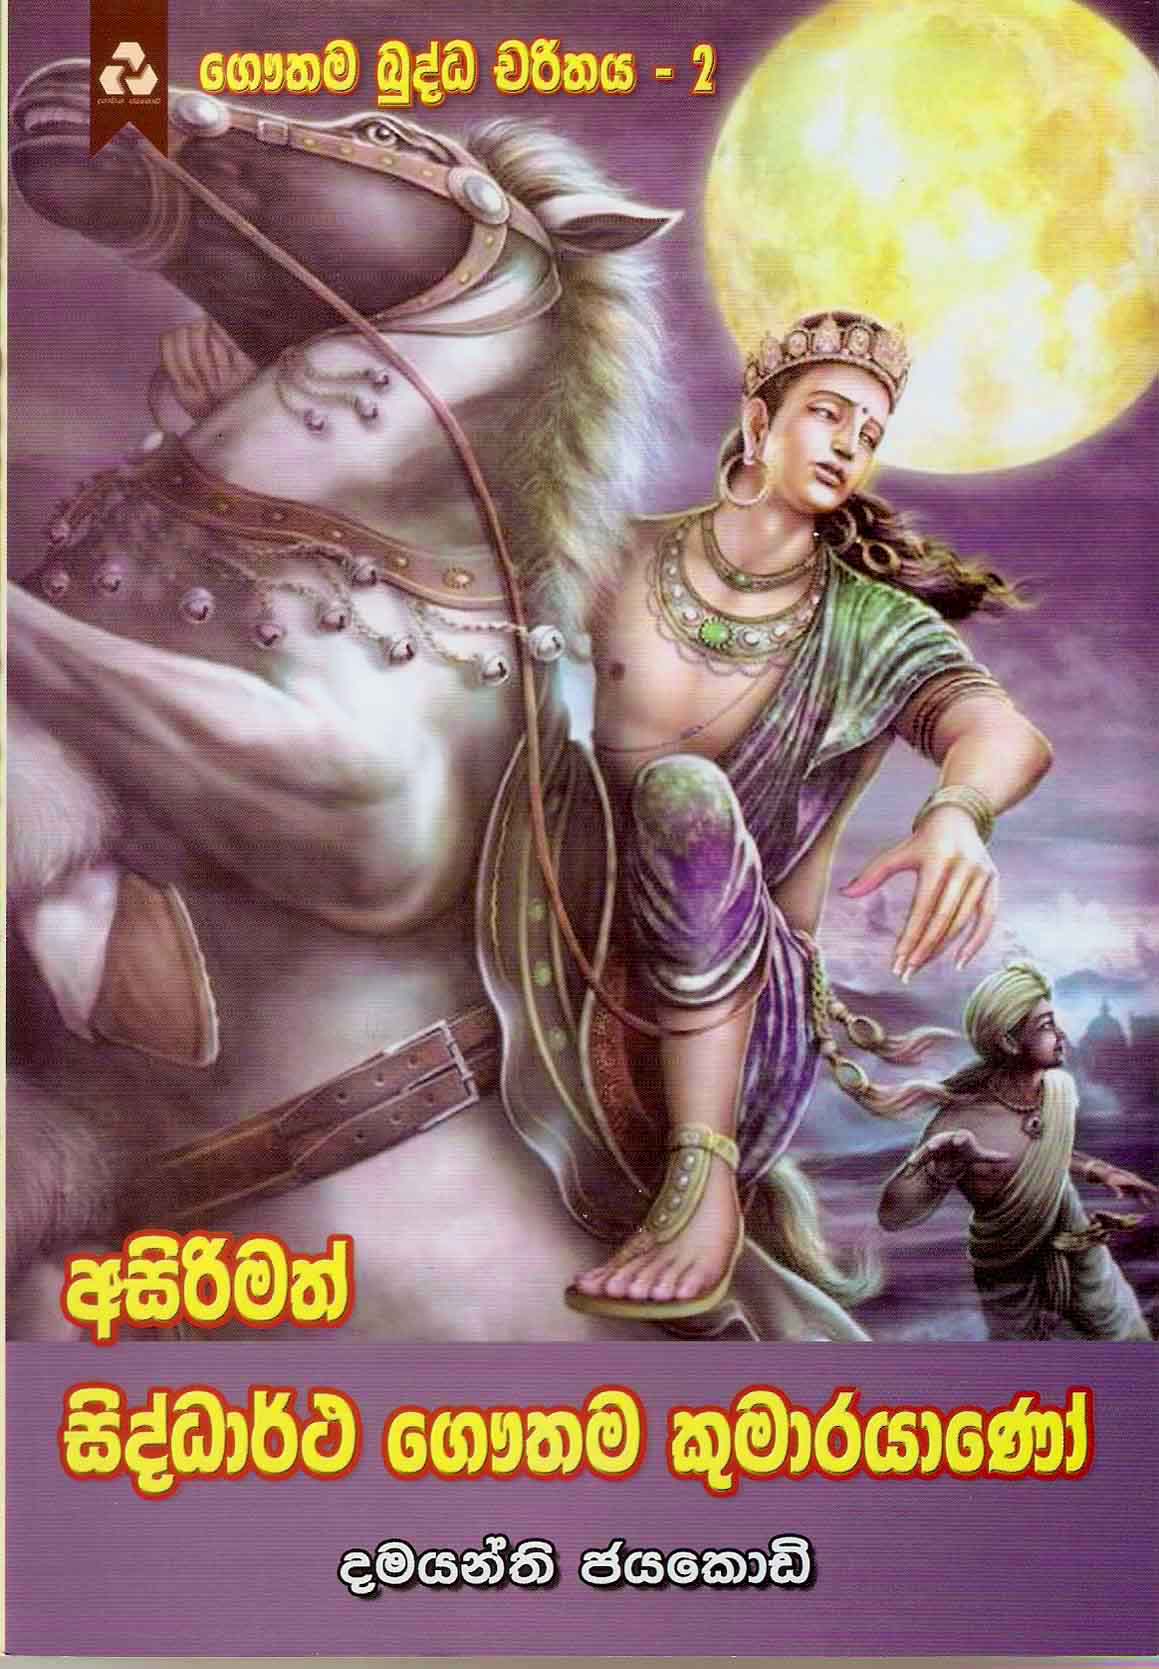 Asirimath Siddartha Gouthama Kumarayano- ගෞතම බුද්ධ චරිතය 2- අසිරිමත් සිද්ධාර්ථ ගෞතම කුමාරයාණෝ